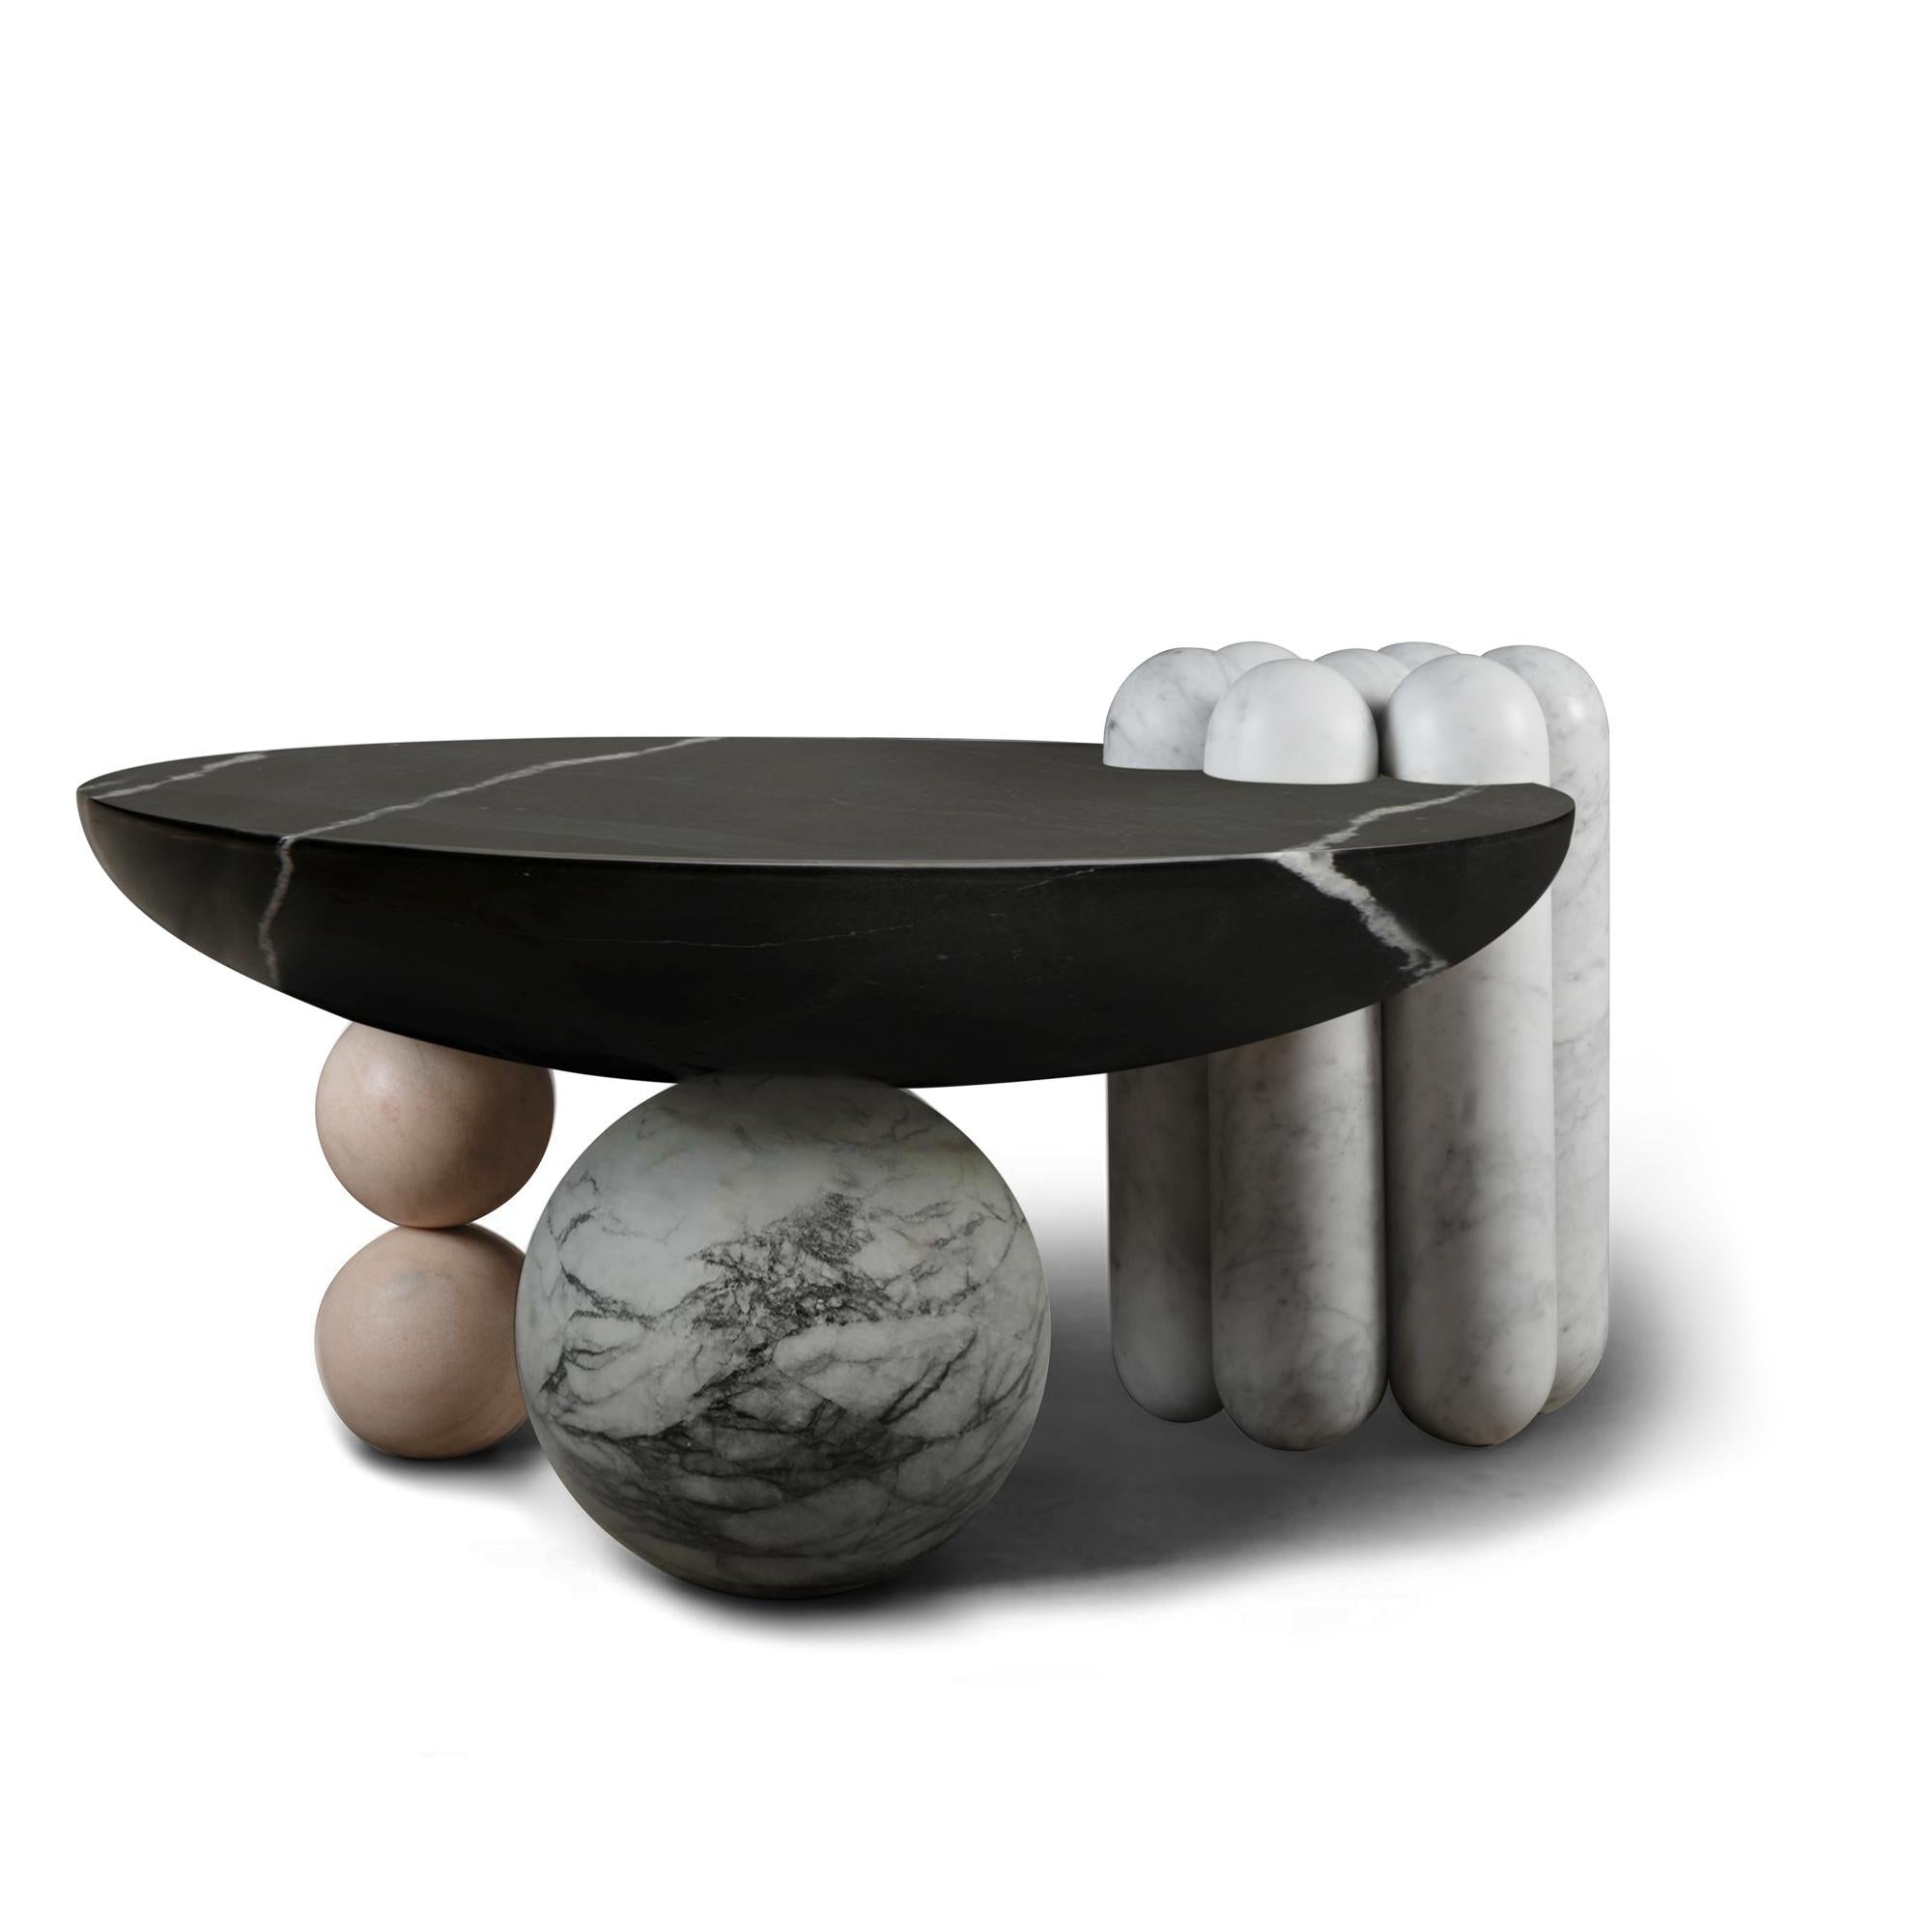 La table basse en marbre Patisserie est un ensemble de différentes formes inspirées de la pâtisserie - un pied latéral en forme de canelé et deux pieds en forme de bonbon soulèvent un plateau de table en forme de coupe pour un assemblage